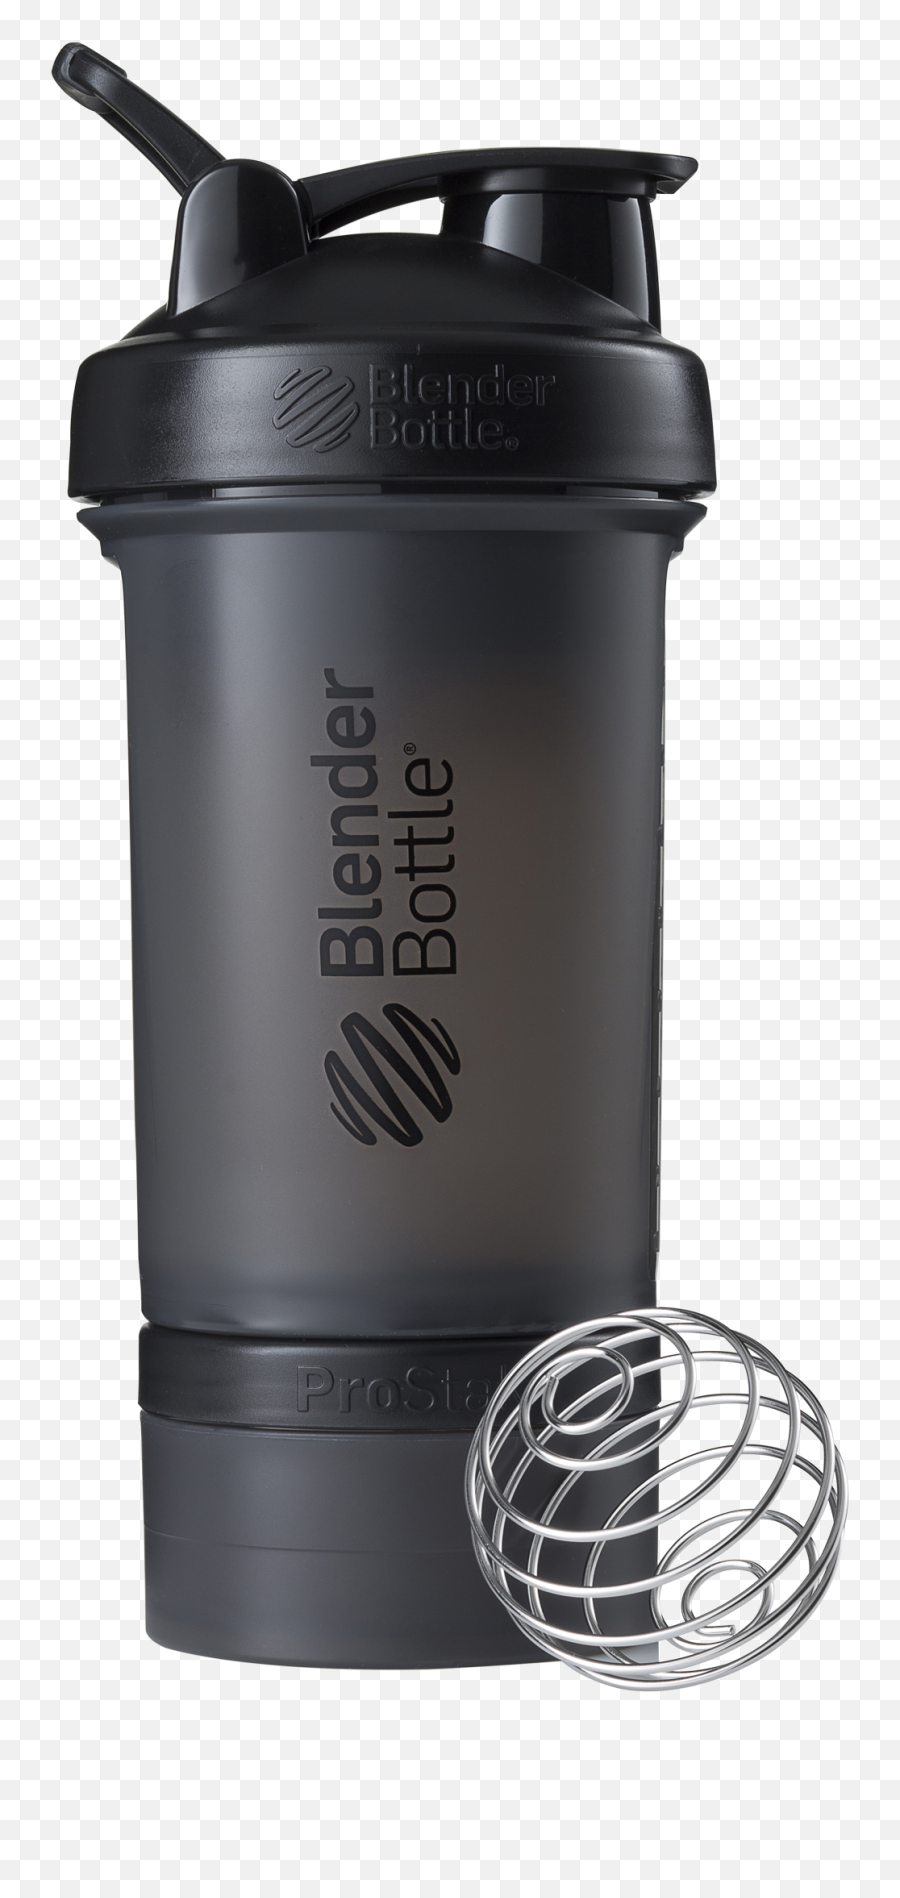 Best Shaker Cups And Bottles - Black Blender Bottle Png,Bottle Transparent